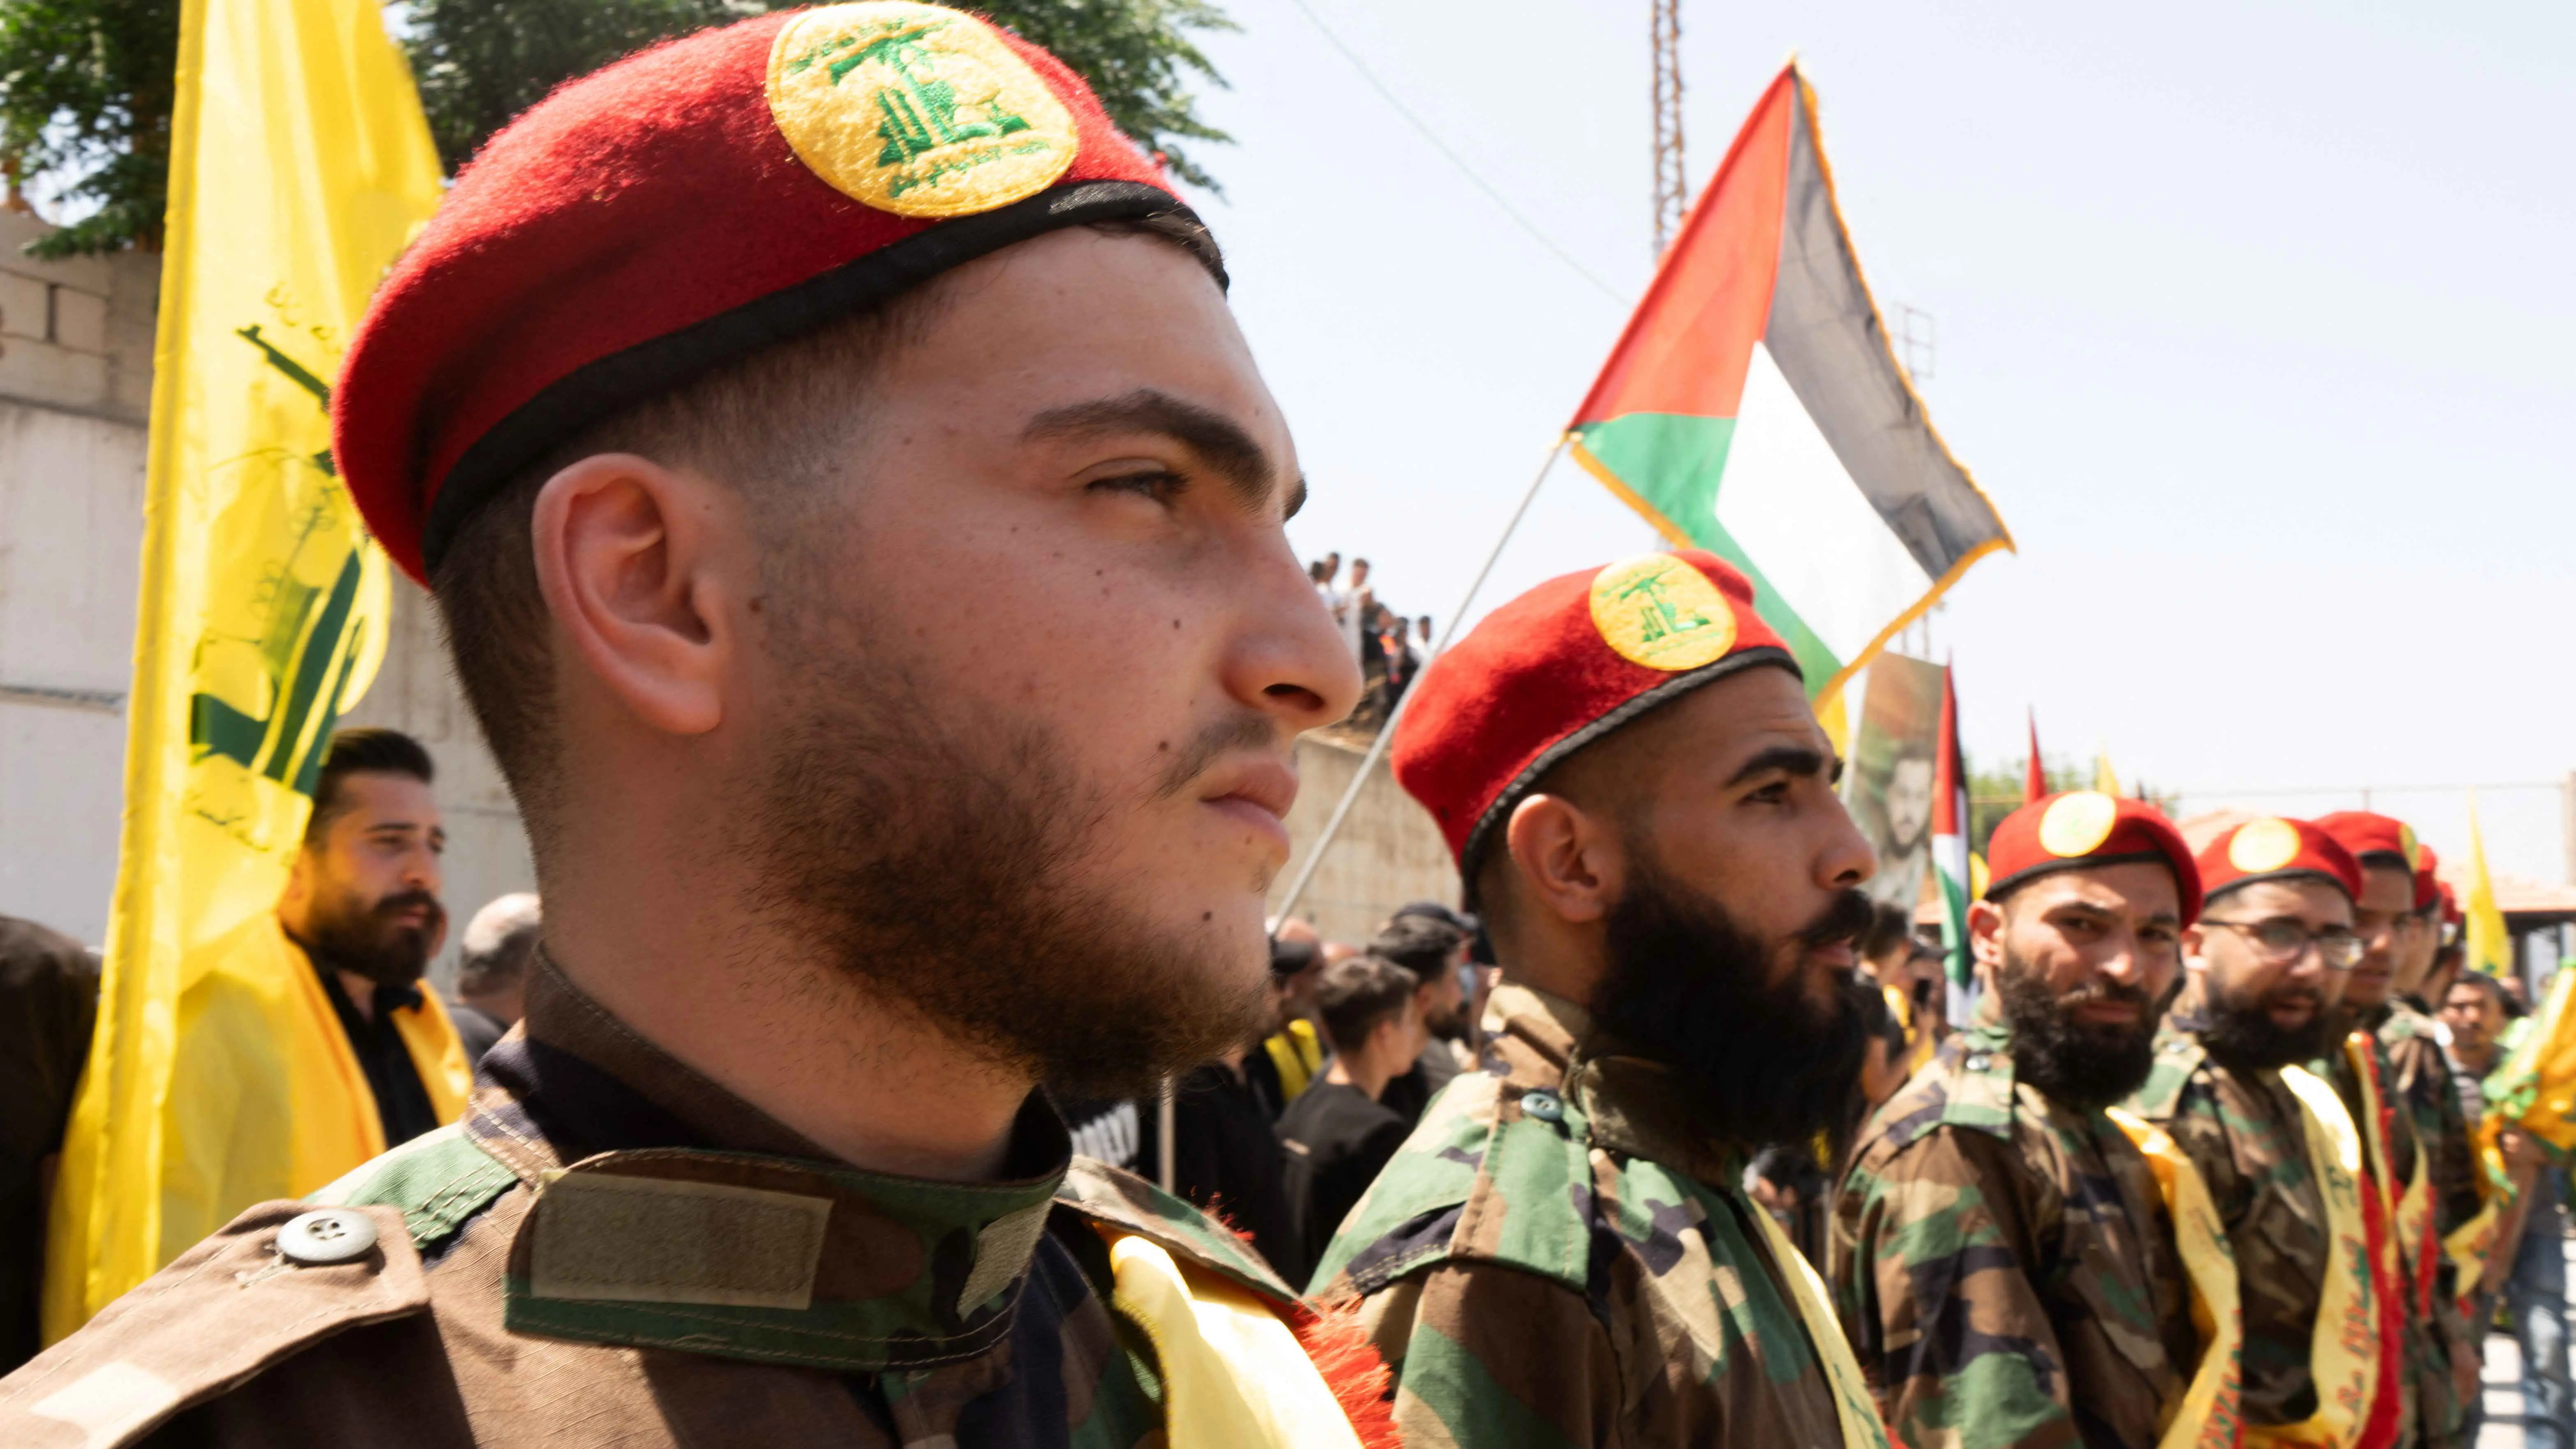 إعلام عبري: إعلان الجامعة العربية بشأن "حزب الله" مرتبط بالمخاوف من الصراع